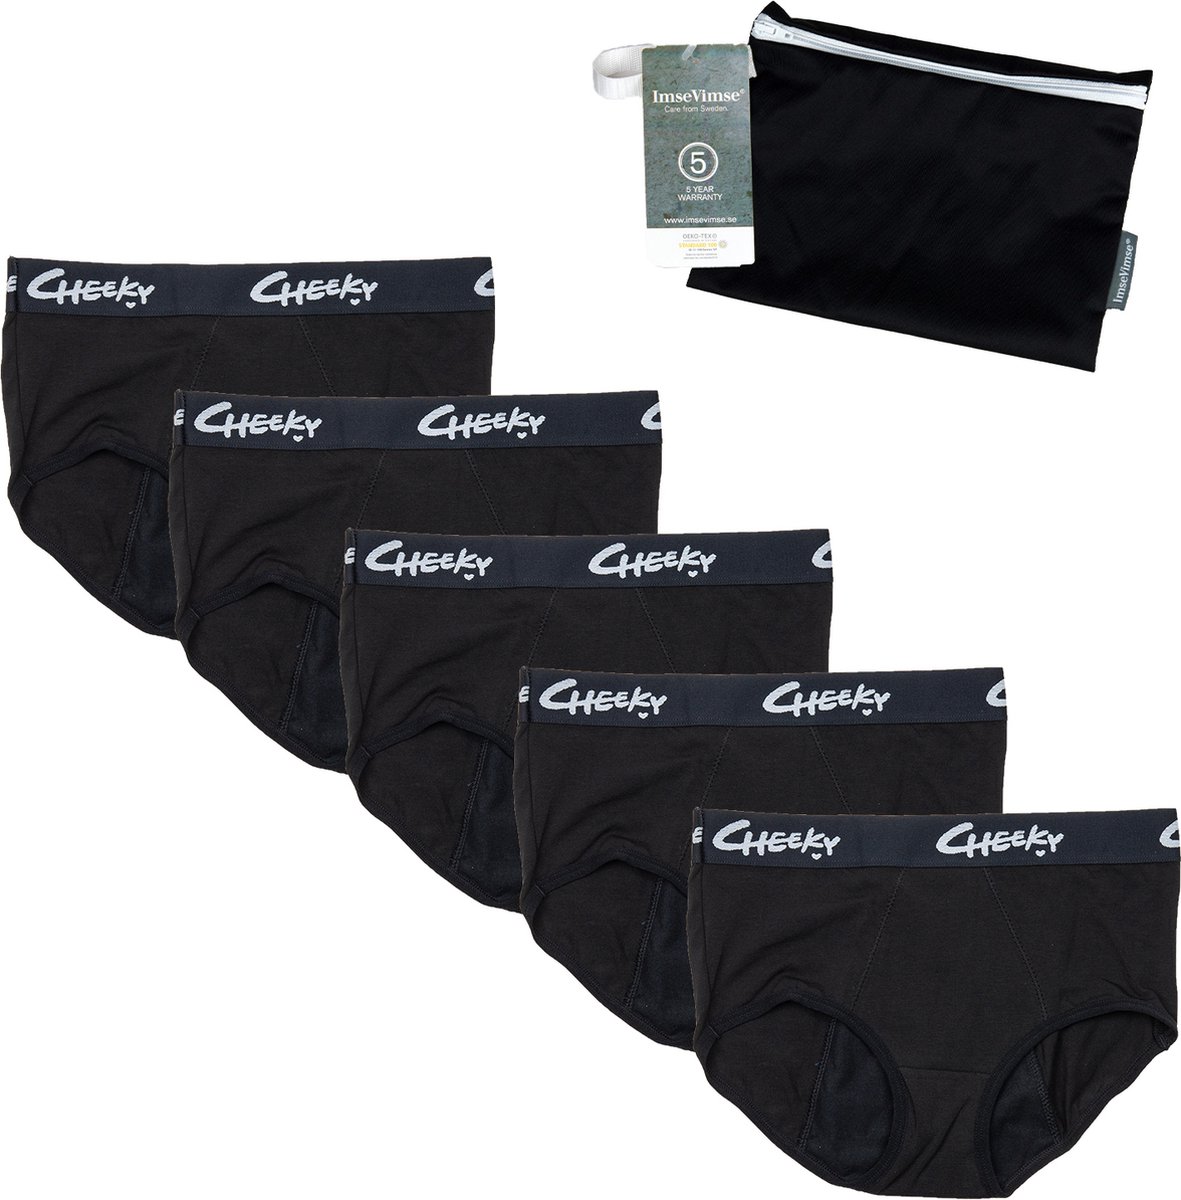 Cheeky Pants Feeling Free - Menstruatie ondergoed Set van 5 + wetbag - Maat 32 - Extra Absorptie - Zero Waste - Comfortabel Ondergoed